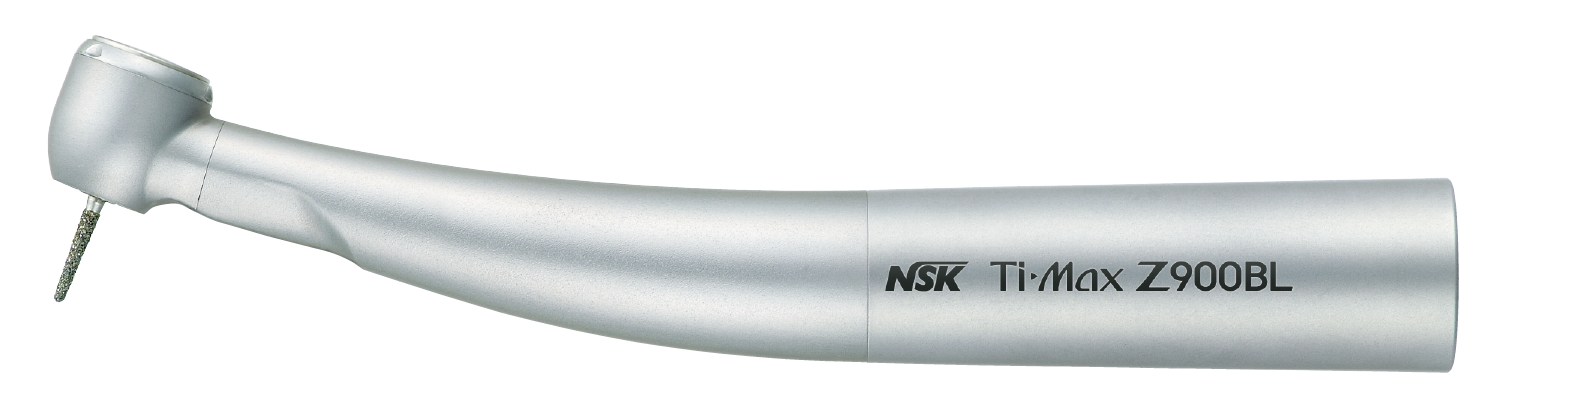 NSK Ti-Max Z900BL, Lichtturbine, 24 Watt, Bien-Air Unifix-Anschluss